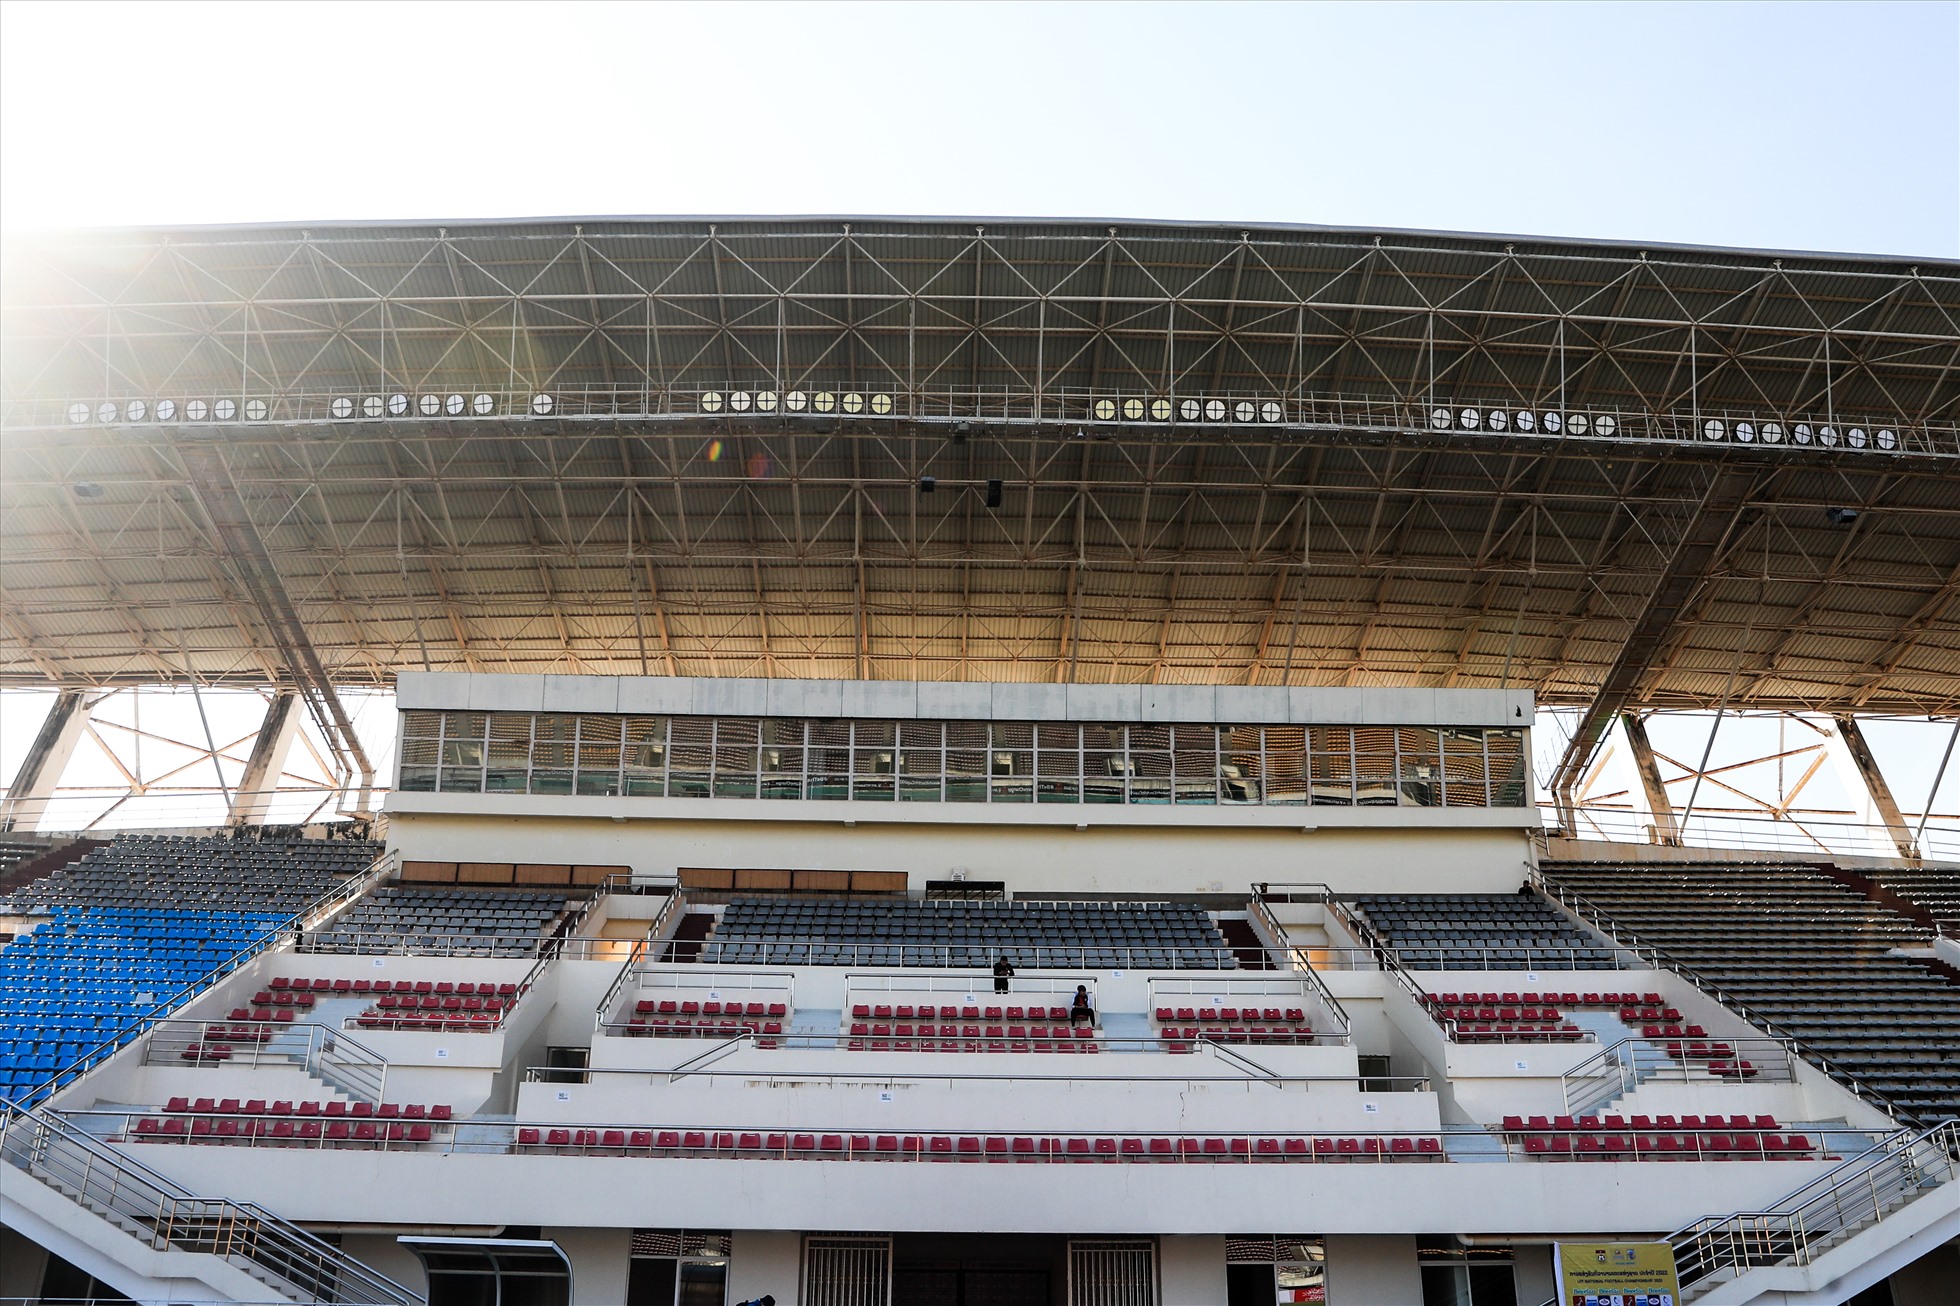 Sân đấu này thường tổ chức các trận đấu của đội tuyển quốc gia Lào tại AFF Cup, giải giao hữu.